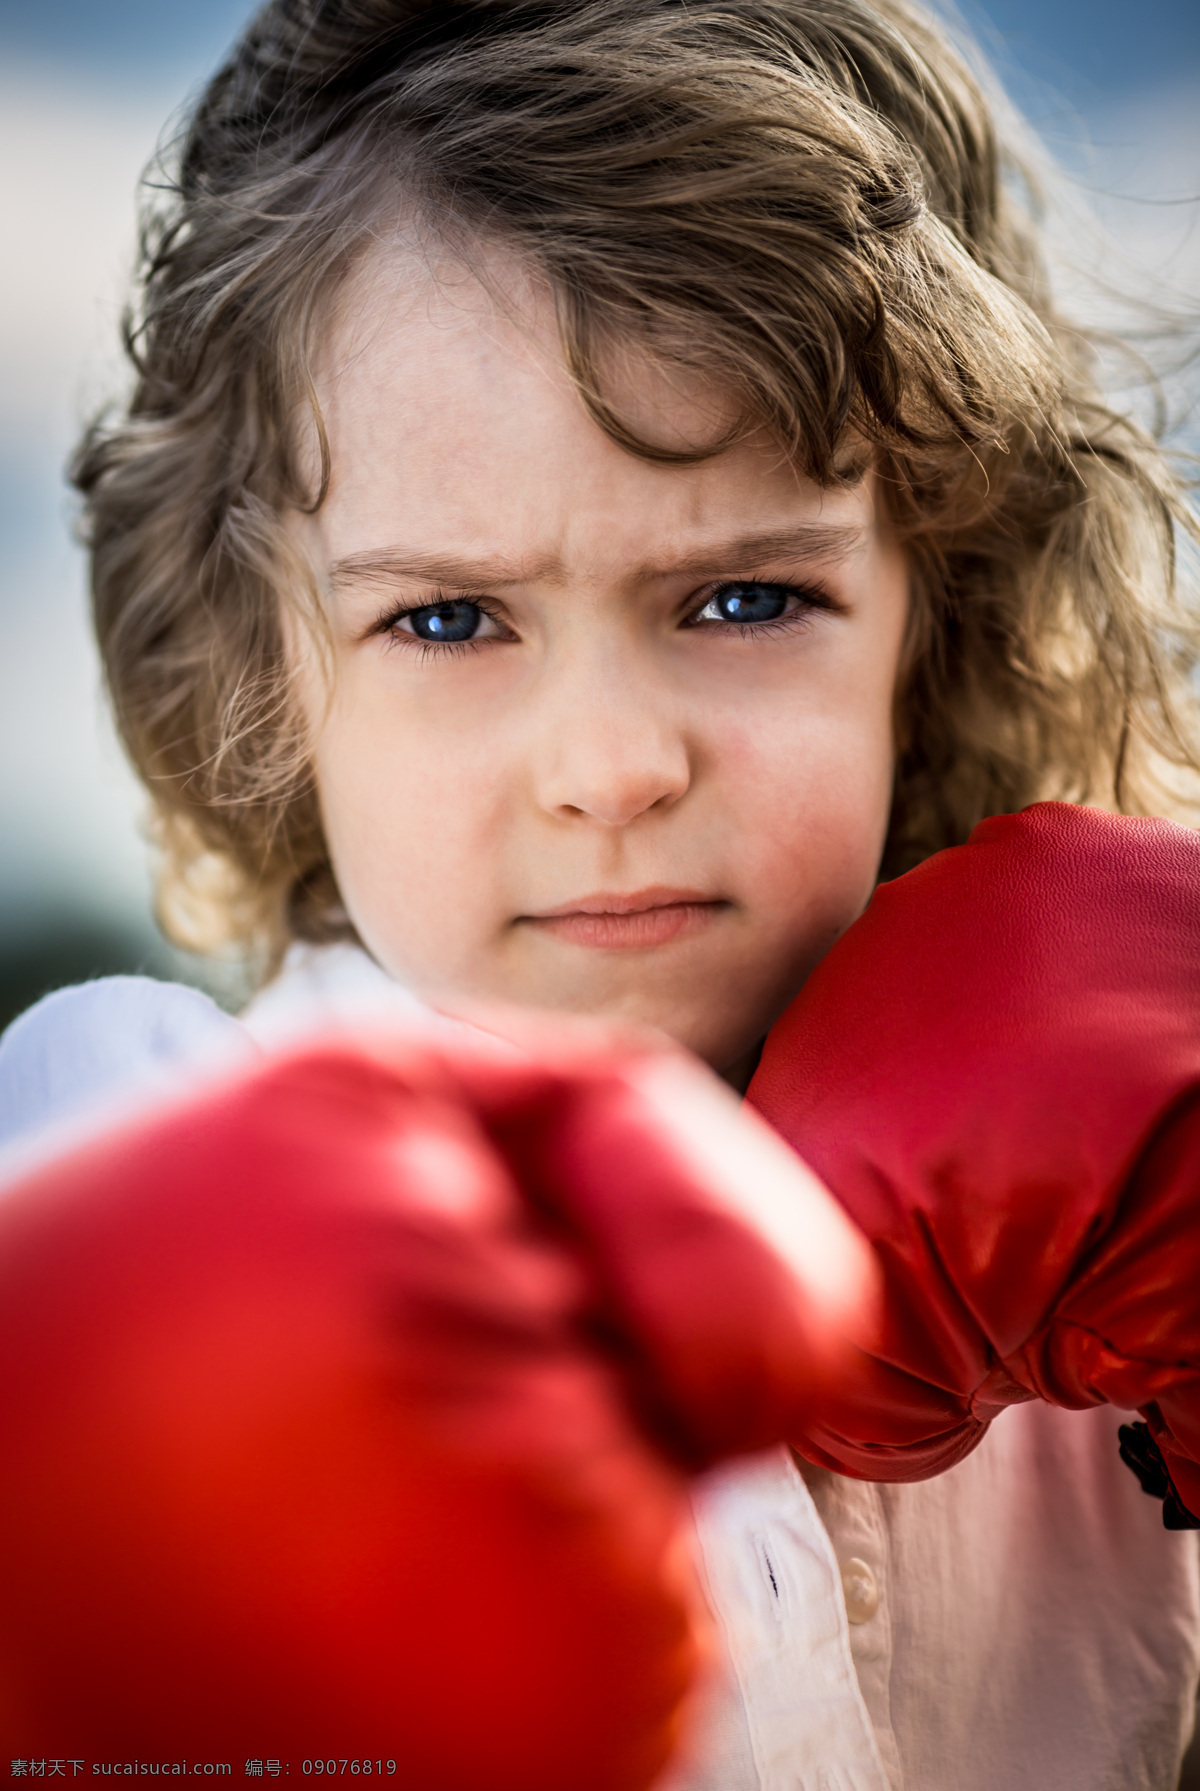 打拳 击 孩子 运动 拳击 儿童 儿童图片 人物图片